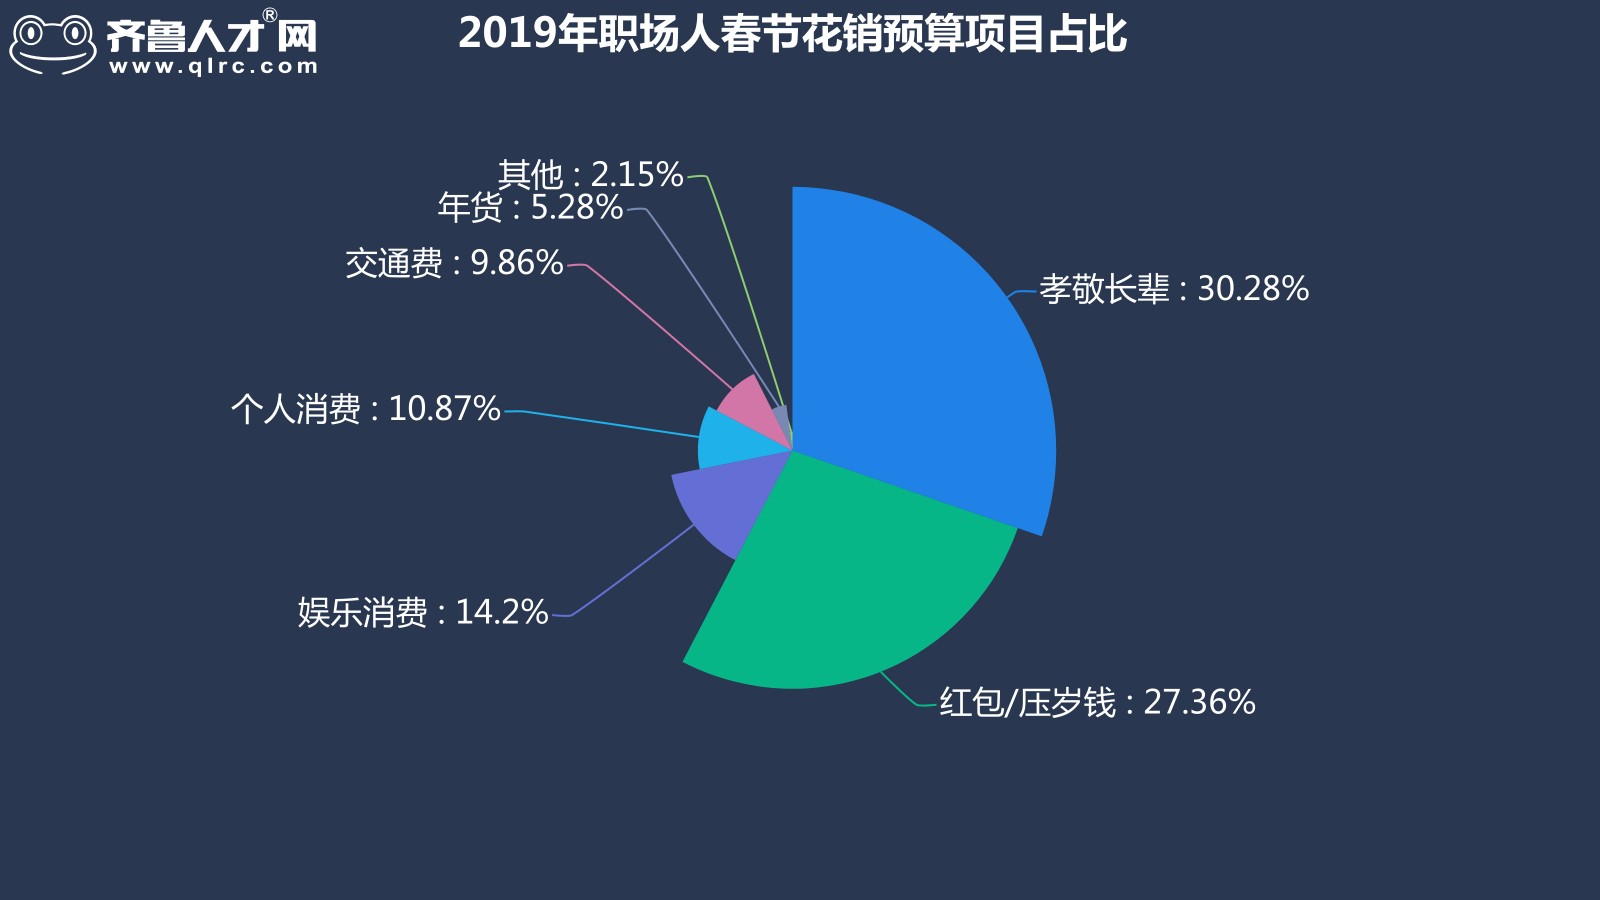 齐鲁人才网-2019年山东四季度薪酬数据图2.jpg